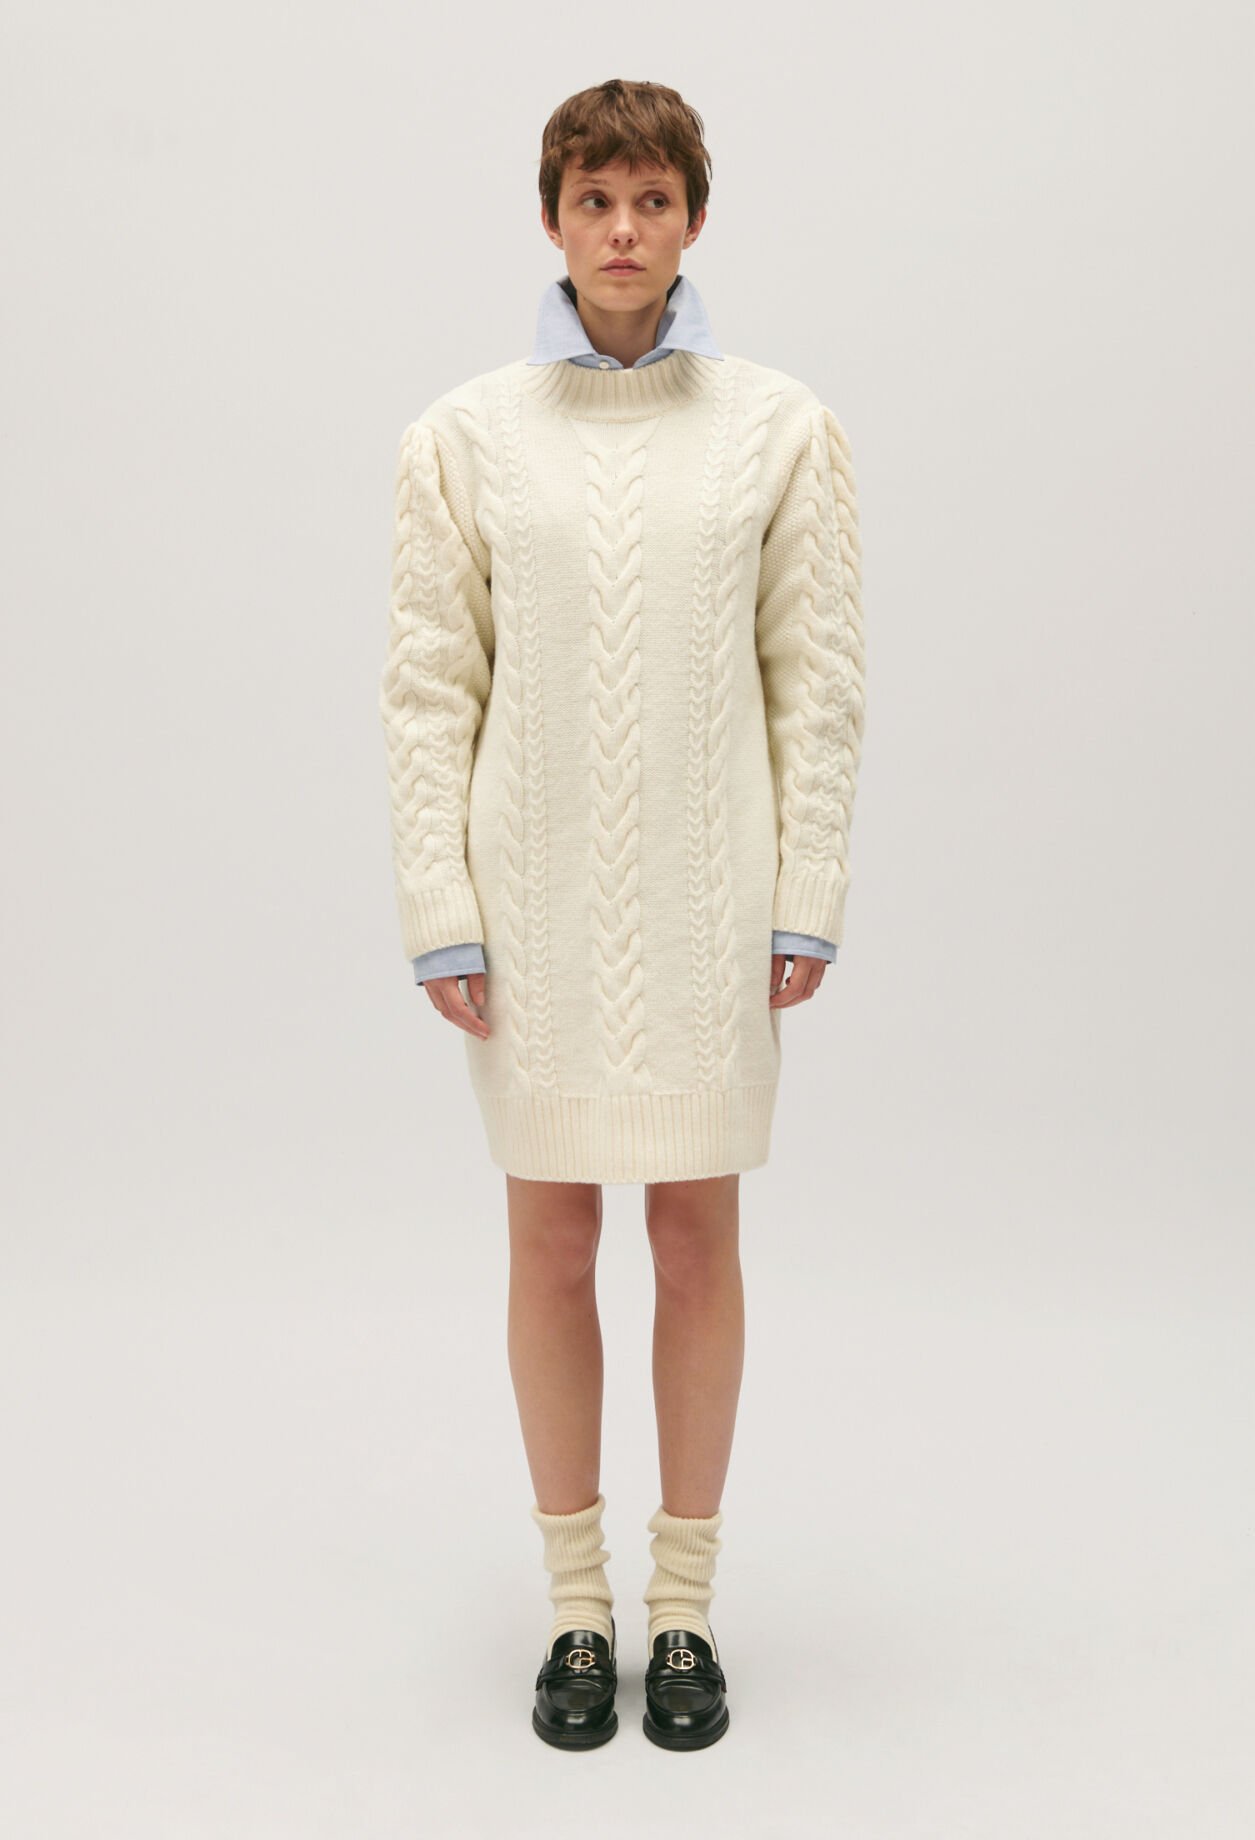 Ecru knitted jumper dress